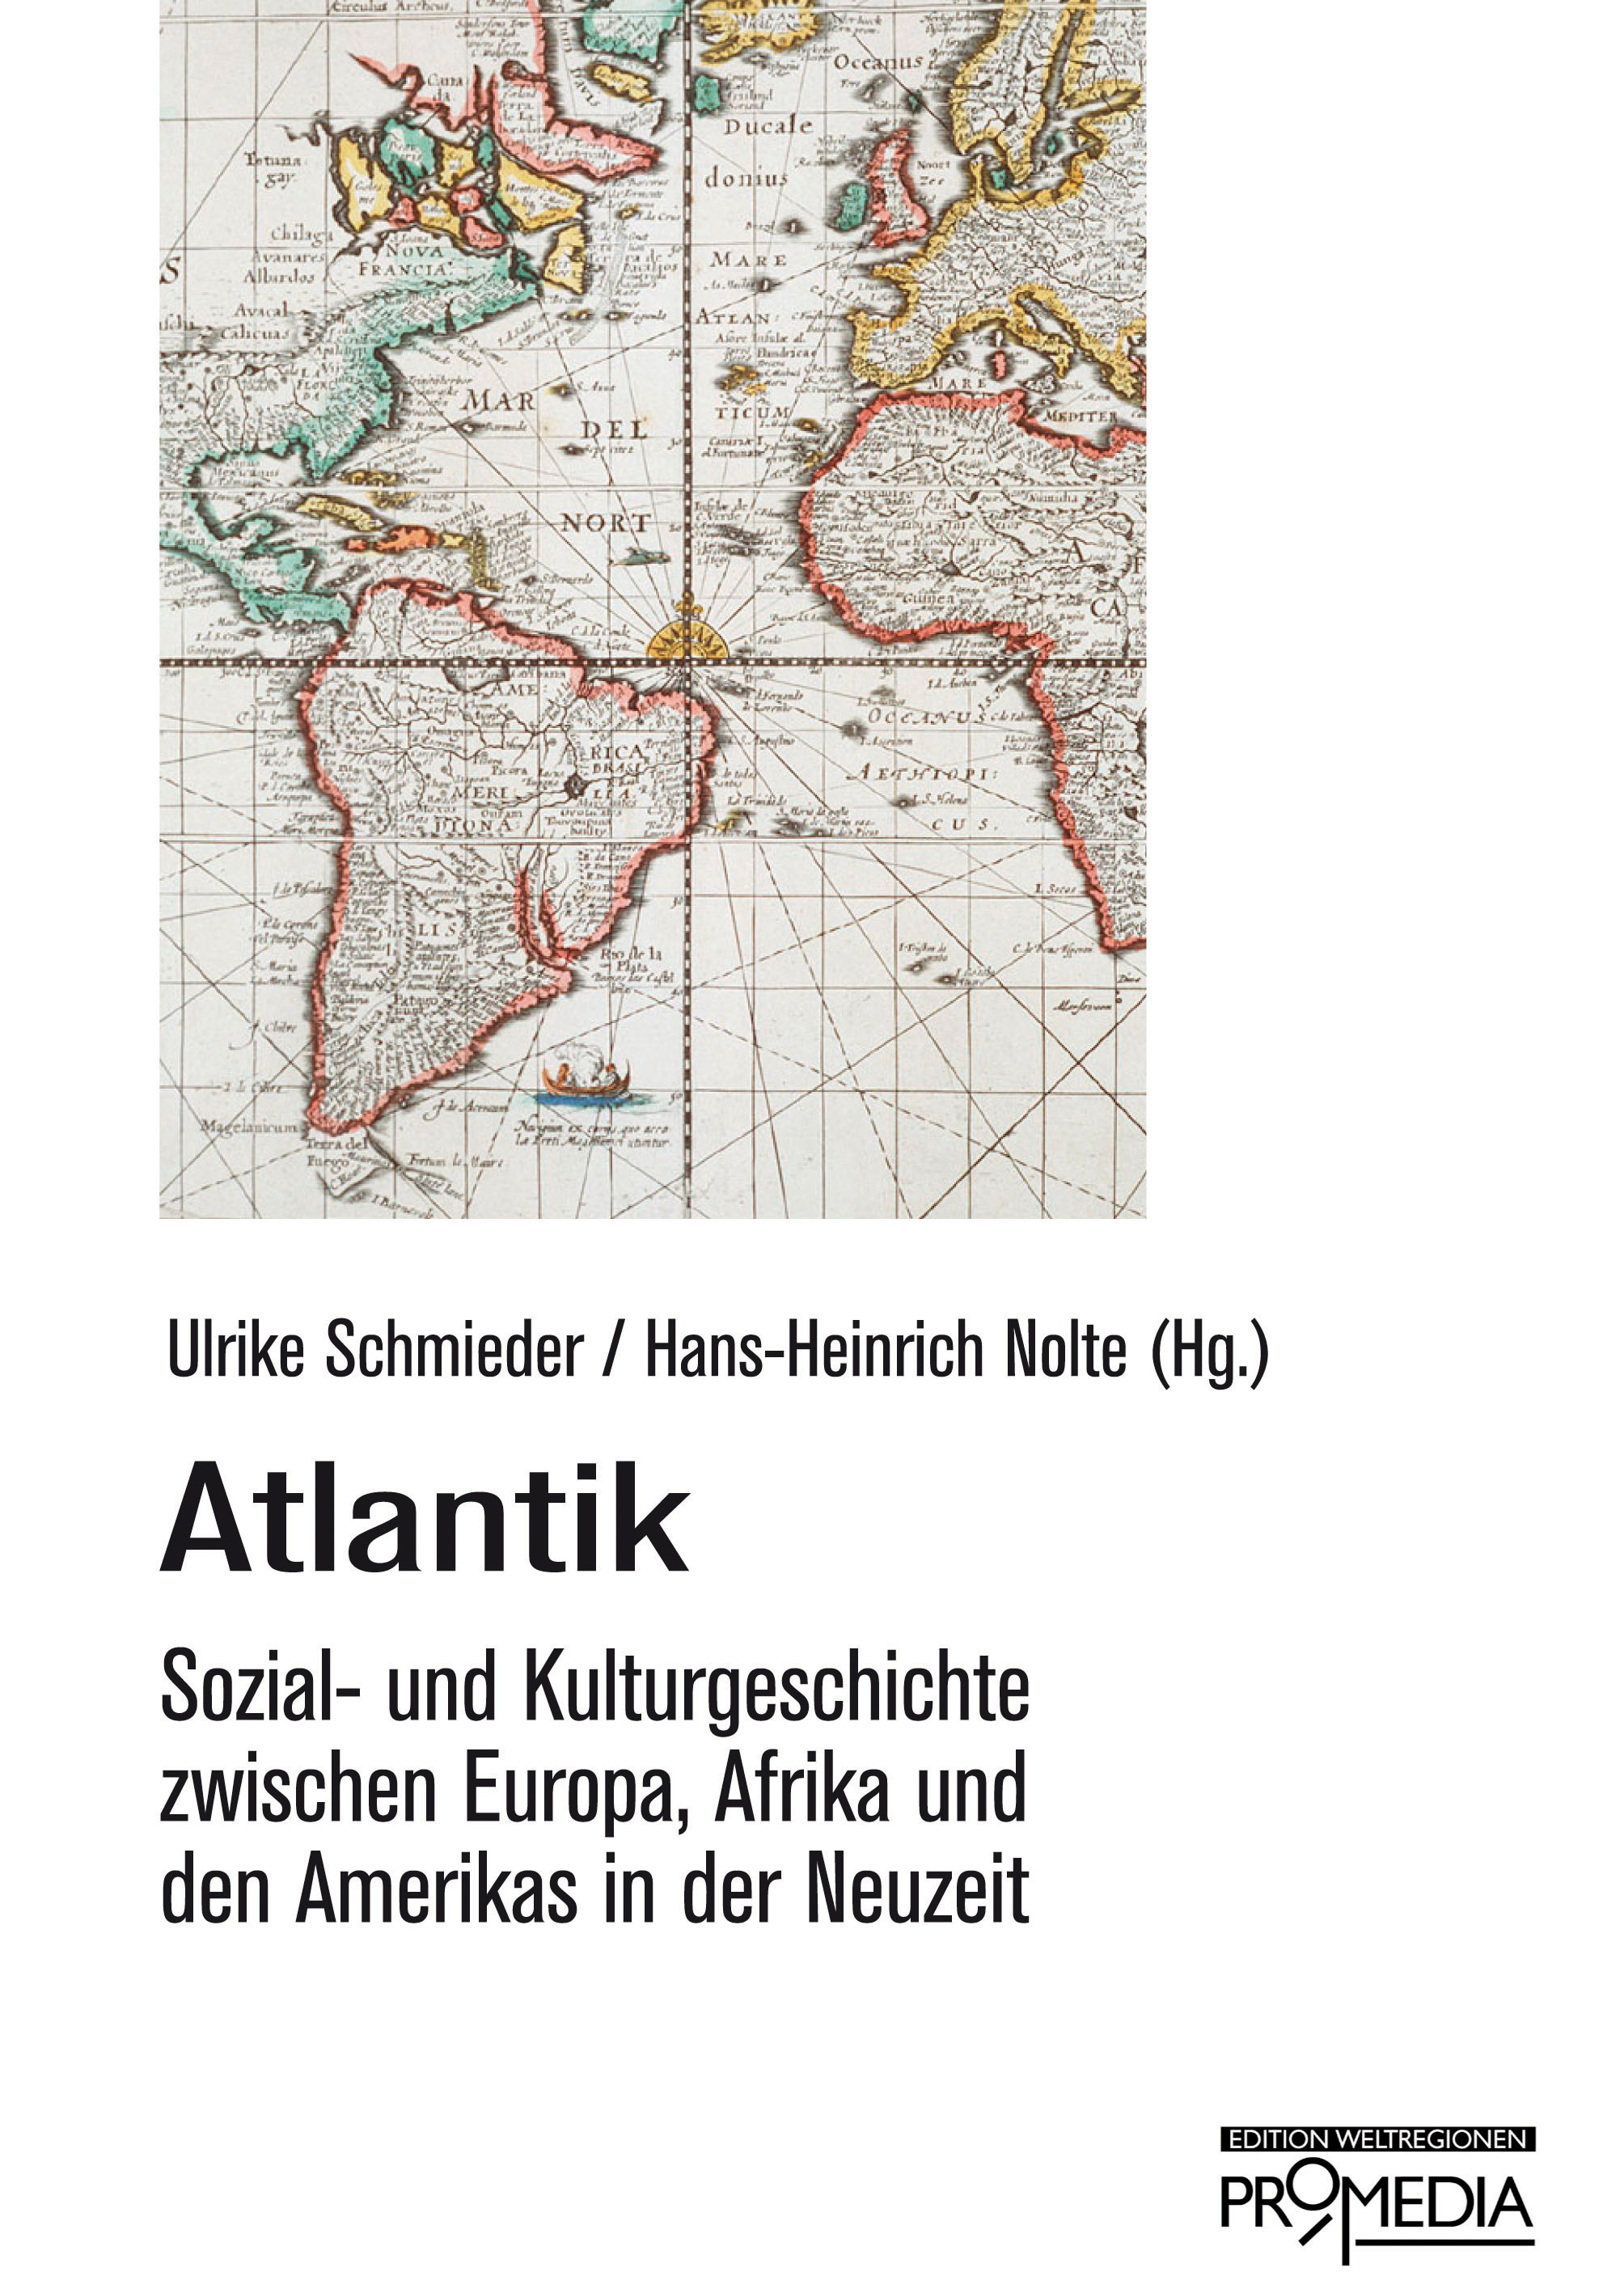 [Cover] Atlantik